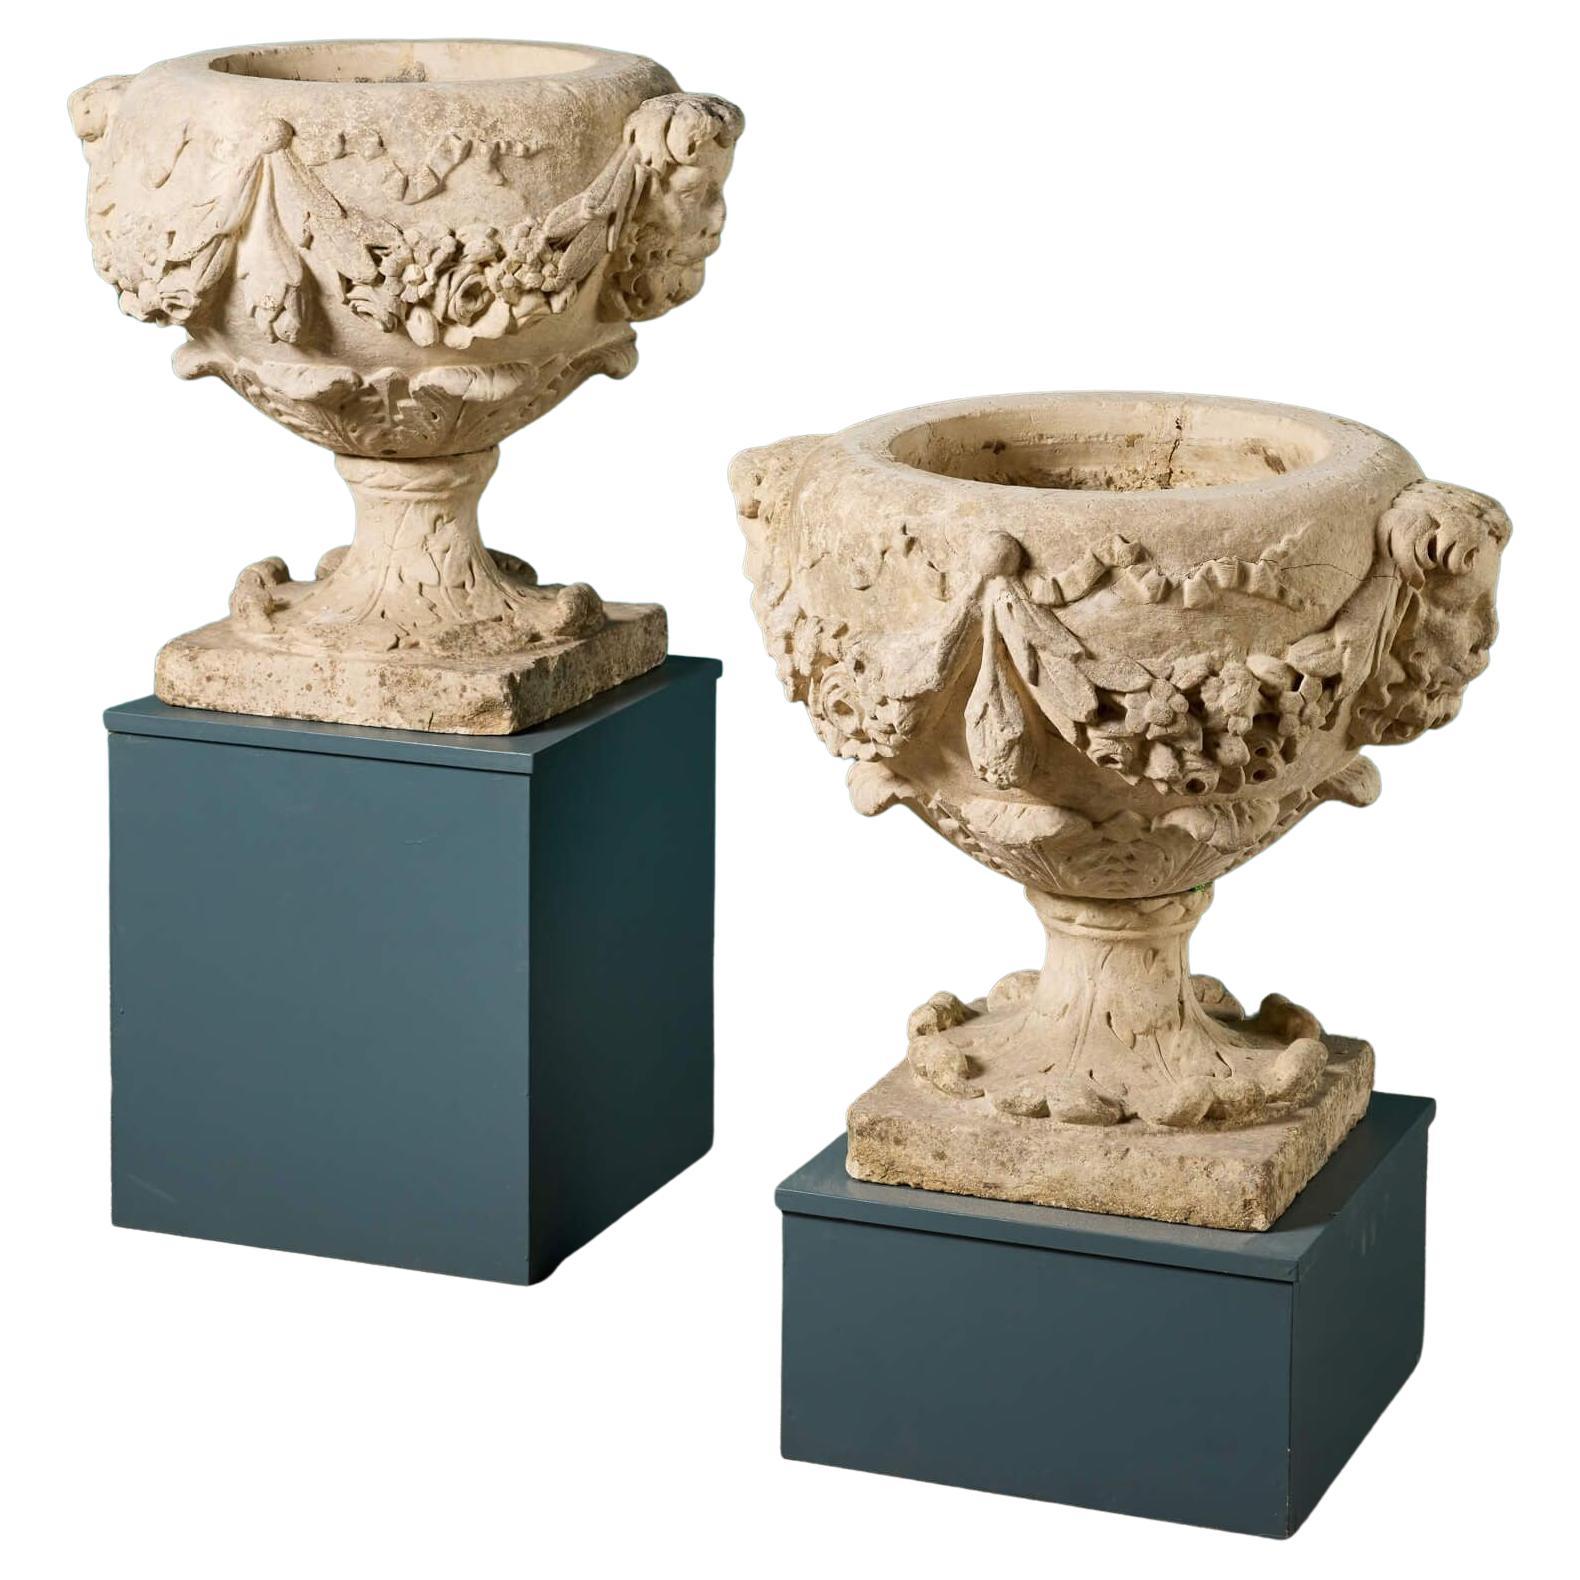 Deux urnes anglaises en pierre calcaire sculptée du 18ème siècle